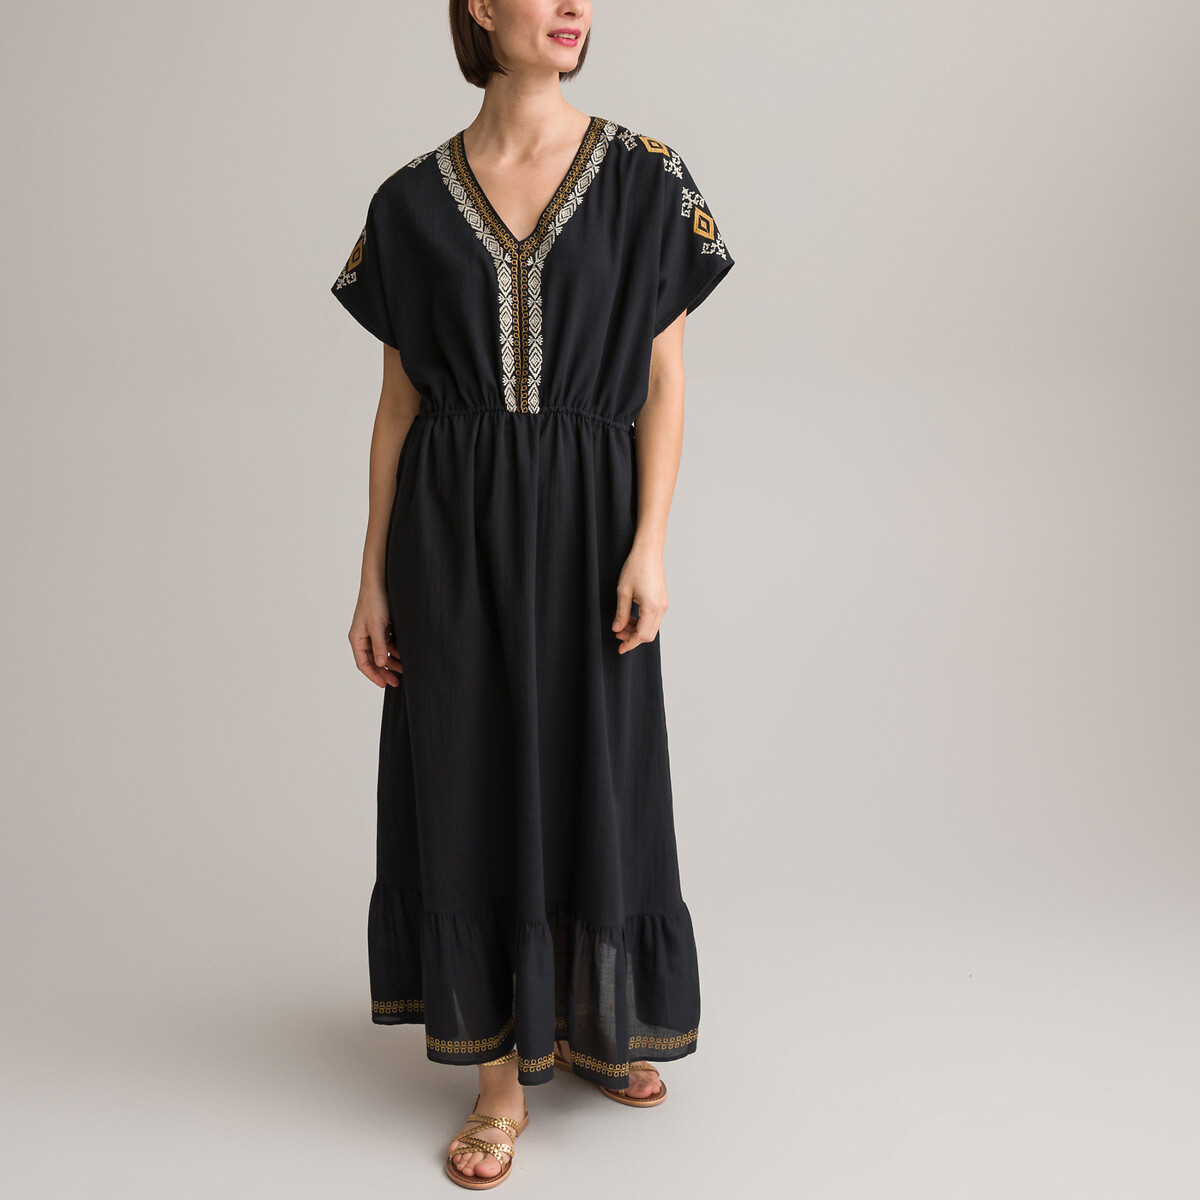 Платье С вышивкой длинное расклешенной формы 44/46 черный